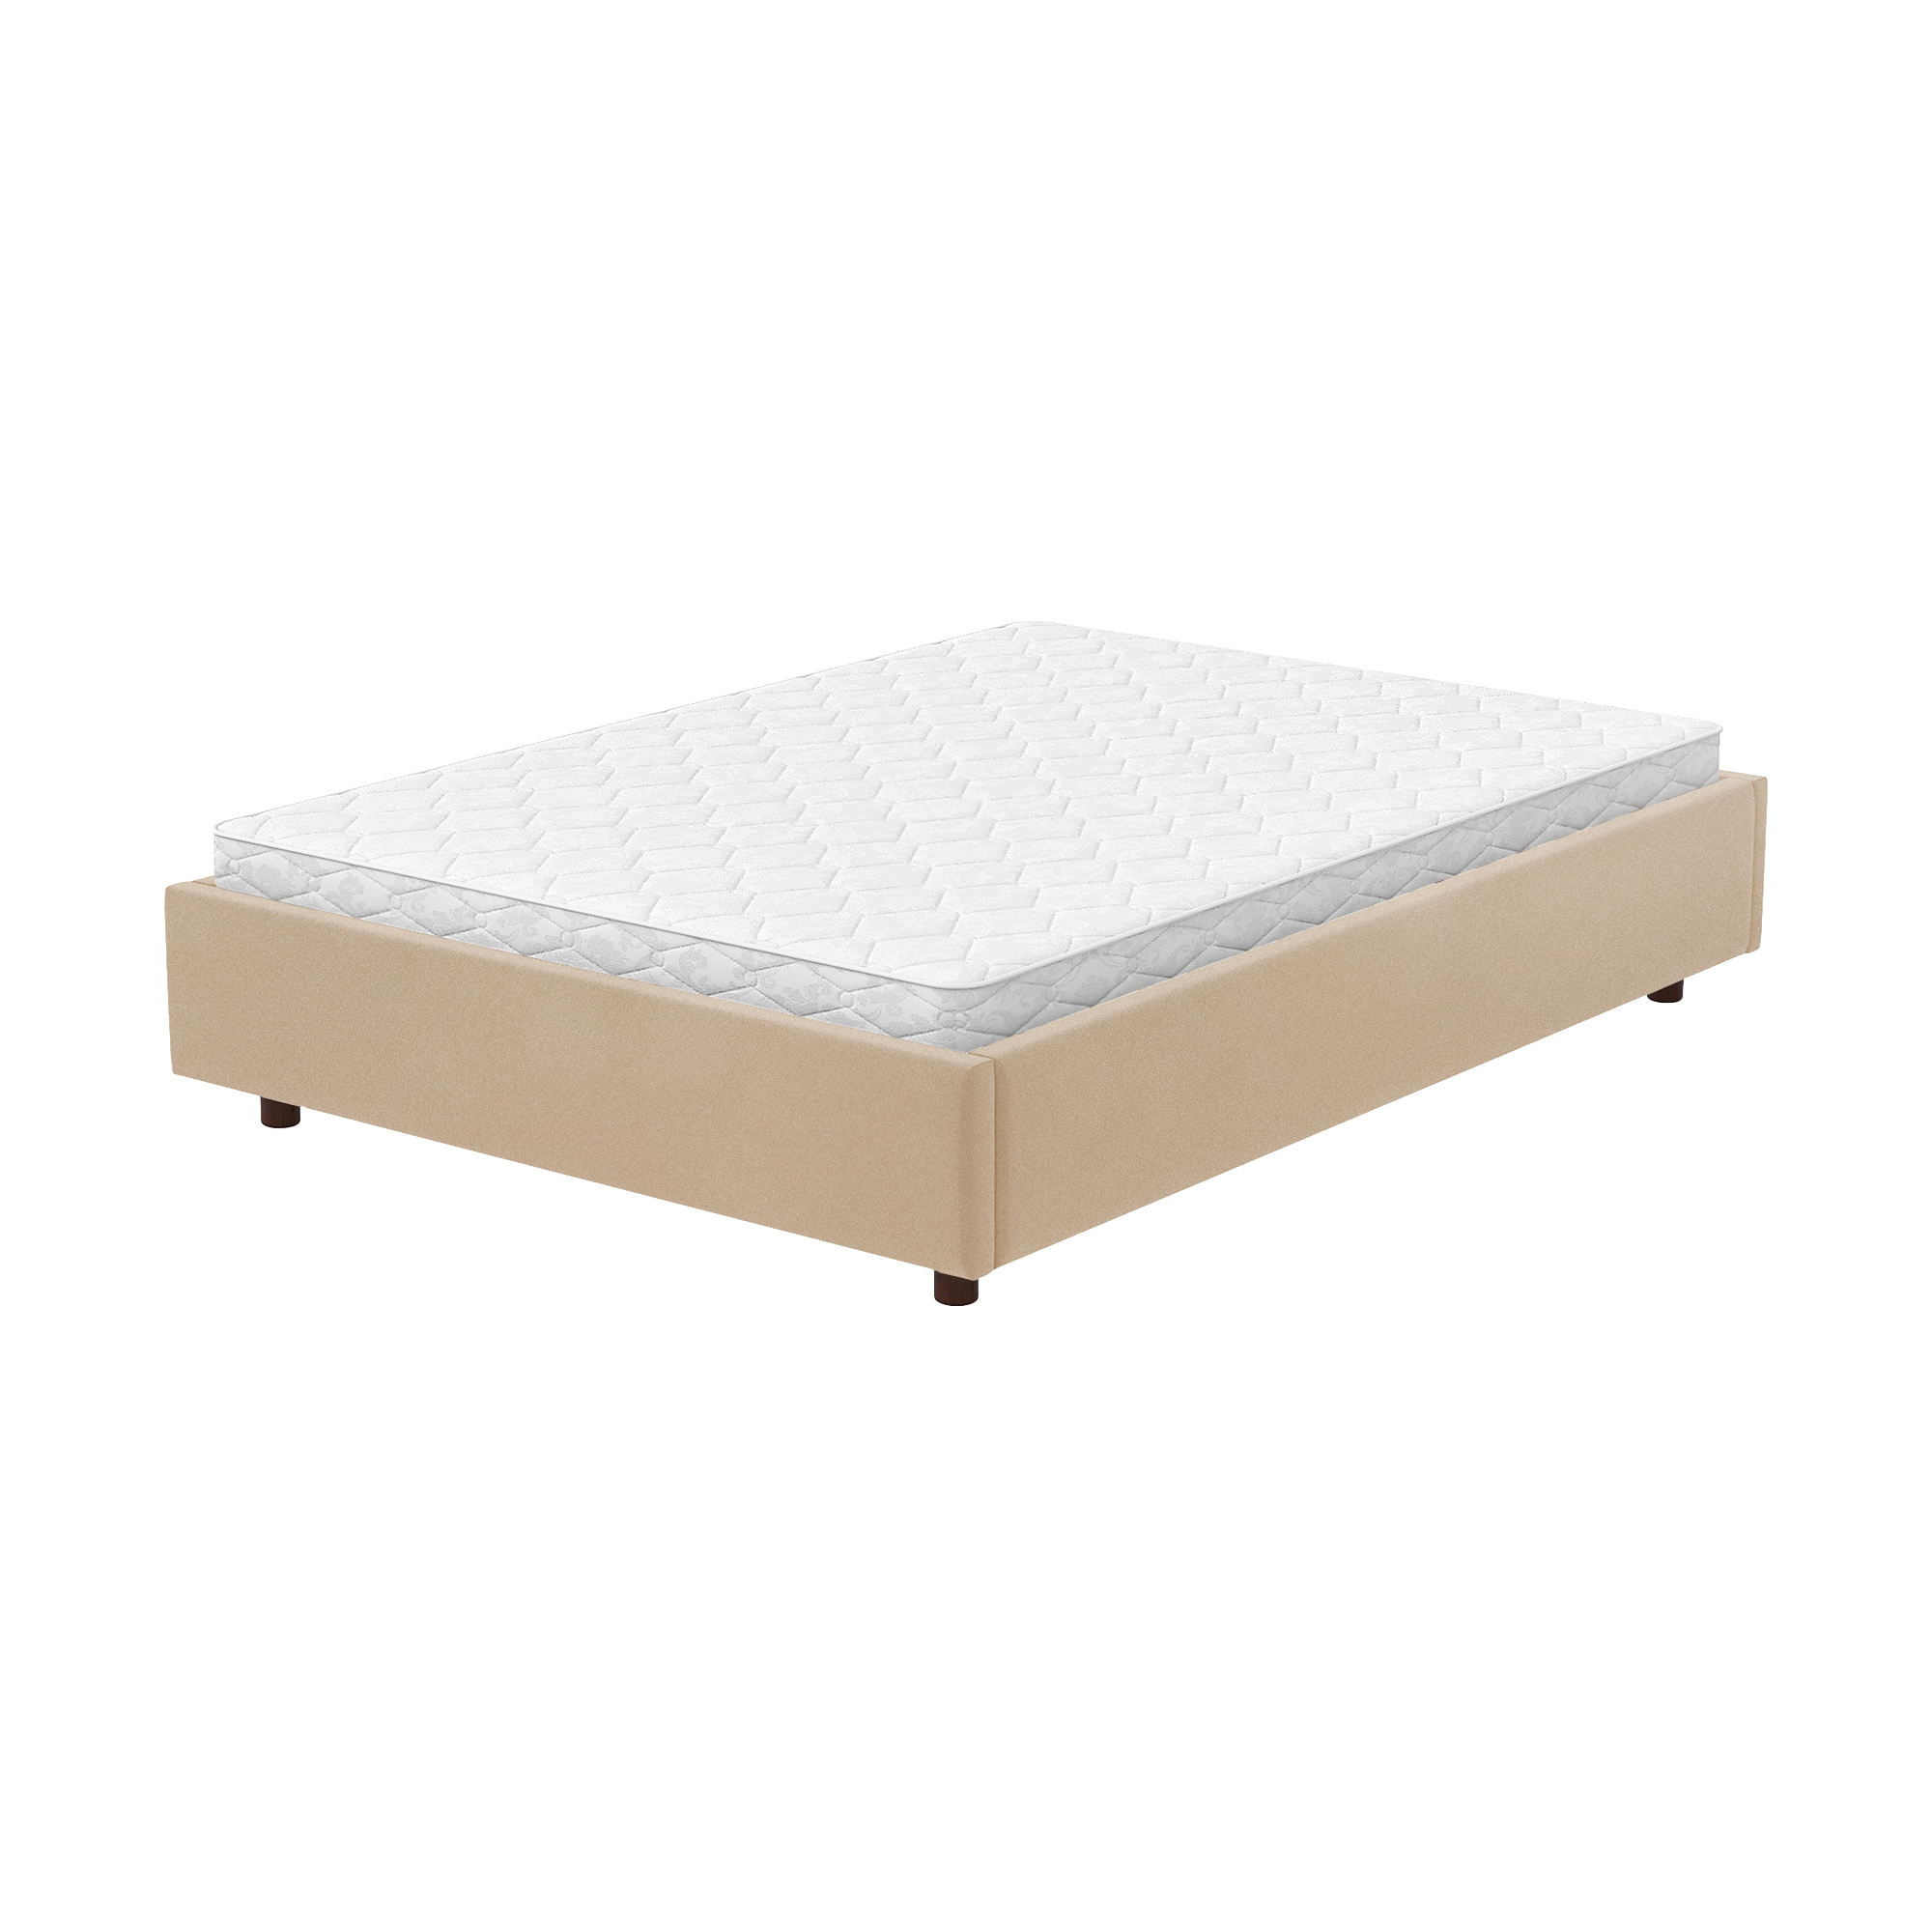 Кровать AS Саманта 160x200 орех/бейдж, цвет бежевый, размер 200х160х30 - фото 2